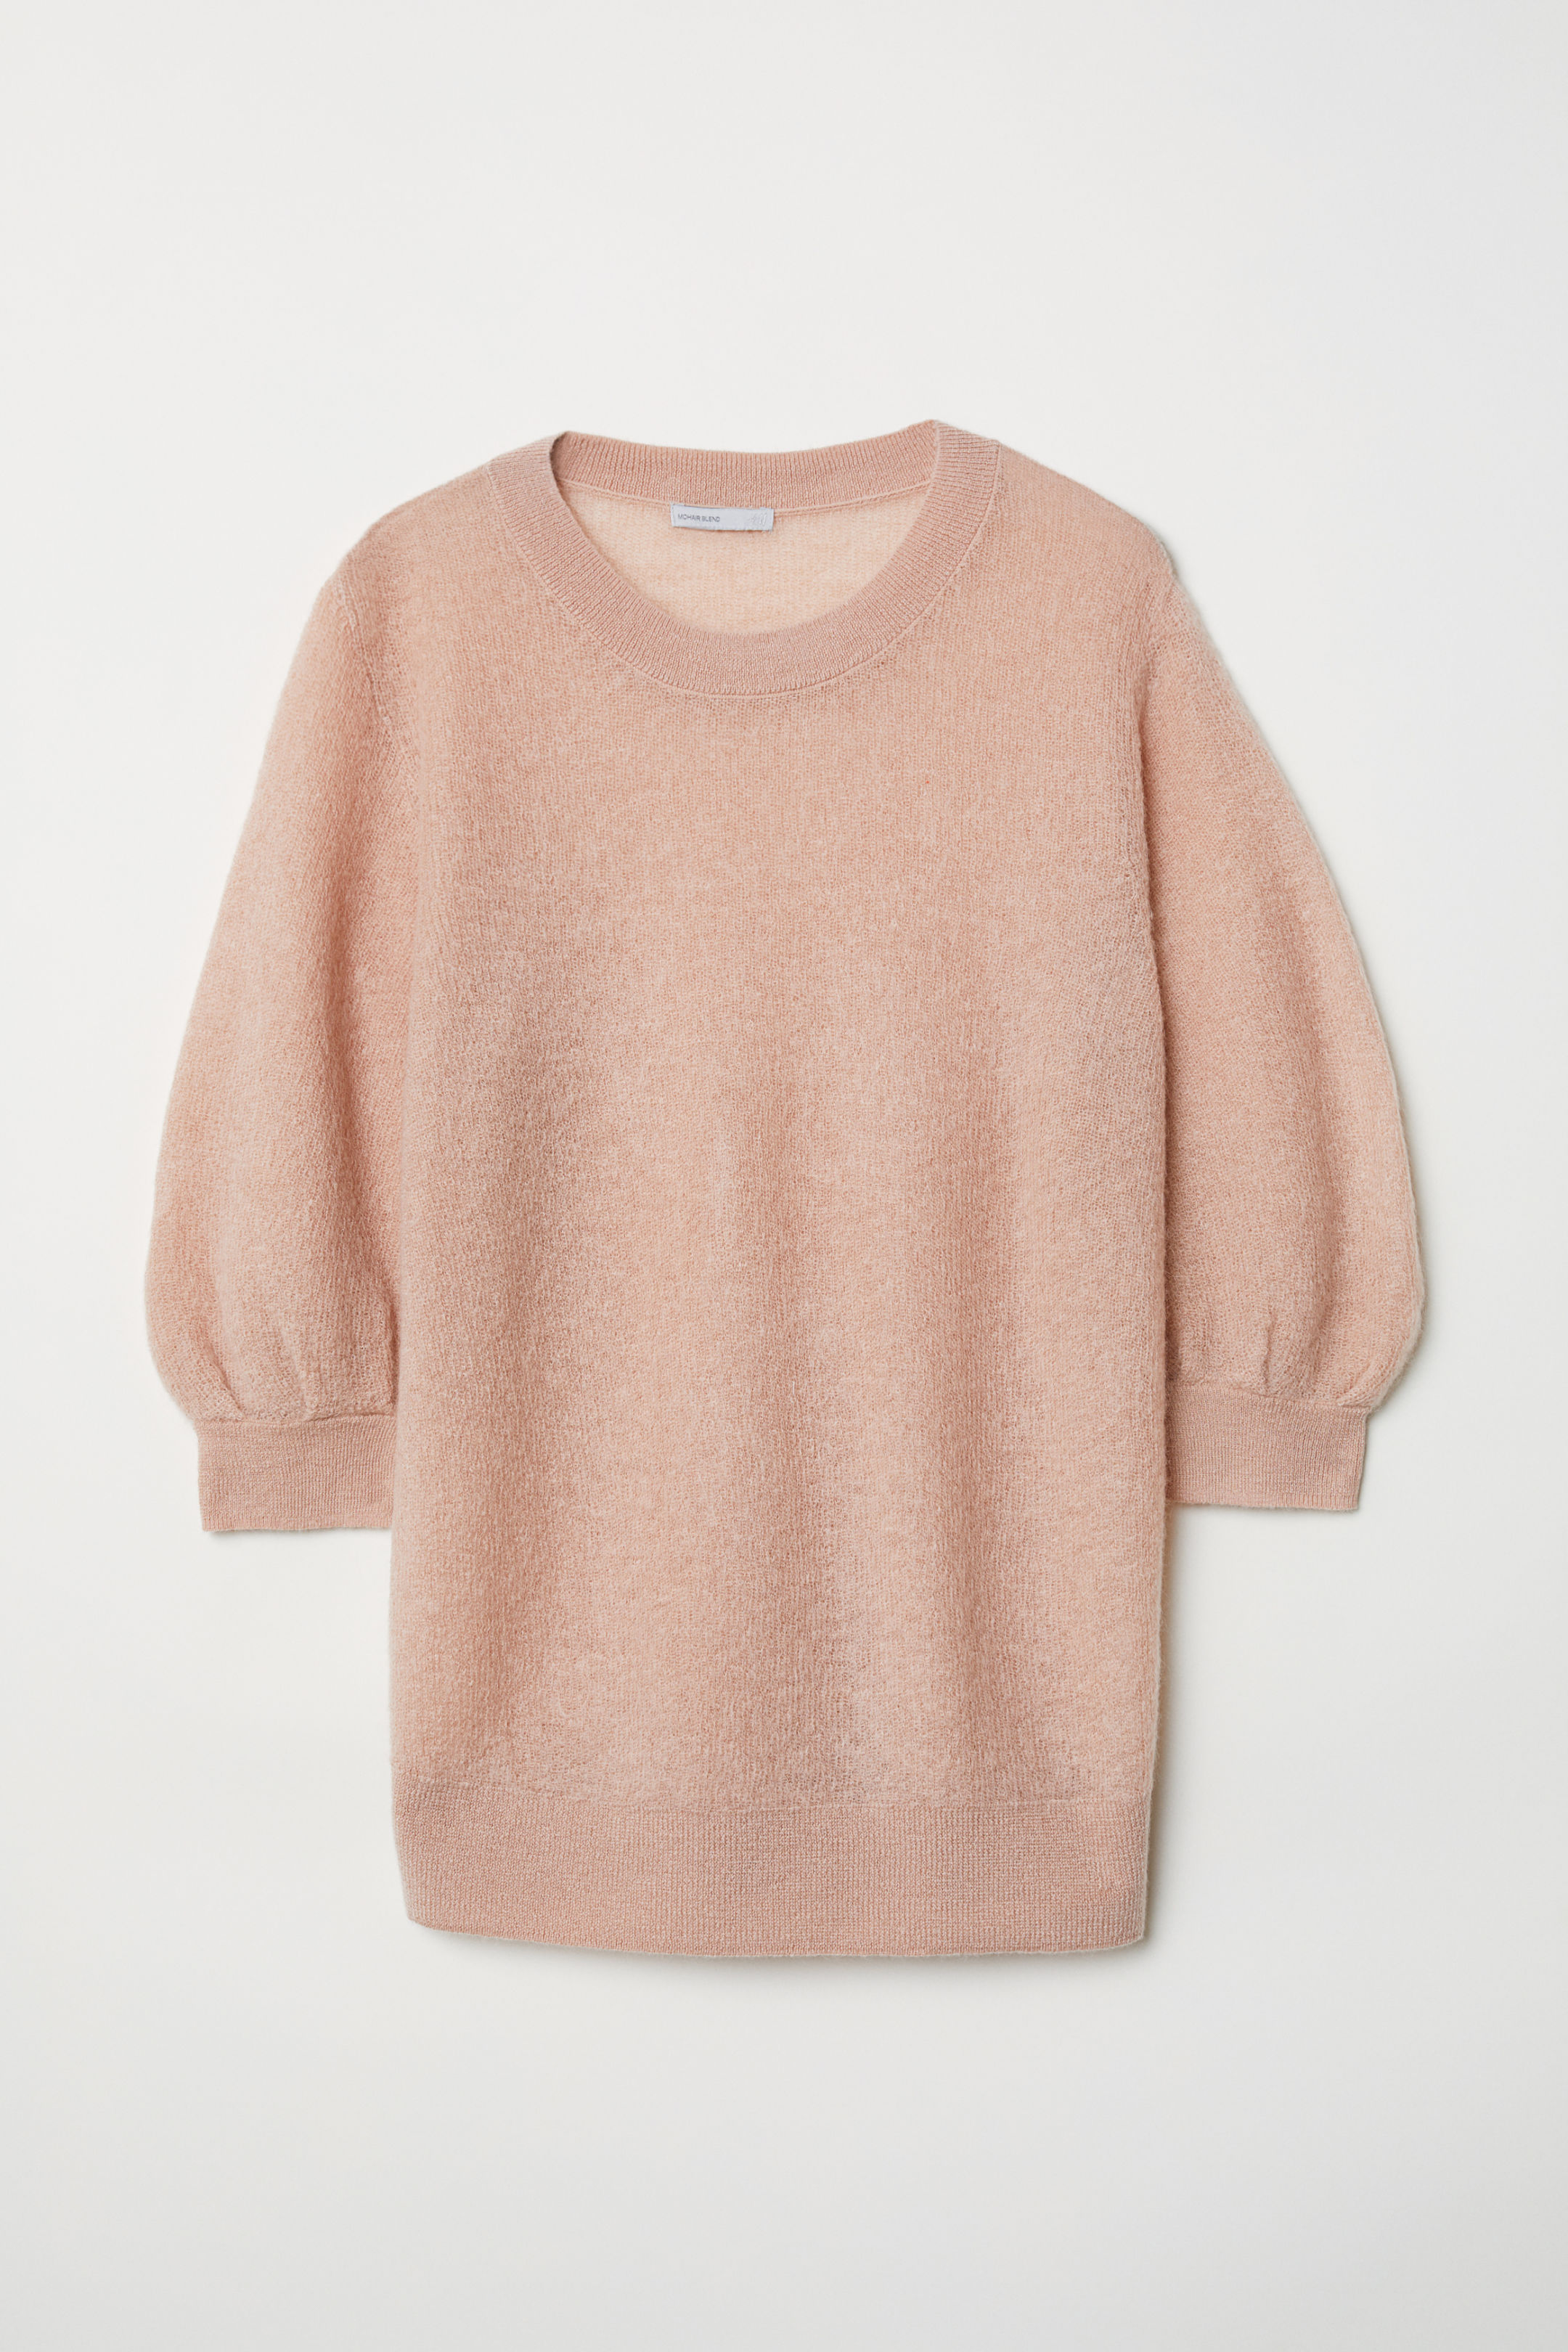 Mohair πουλόβερ με 3/4 μανίκι. H&M